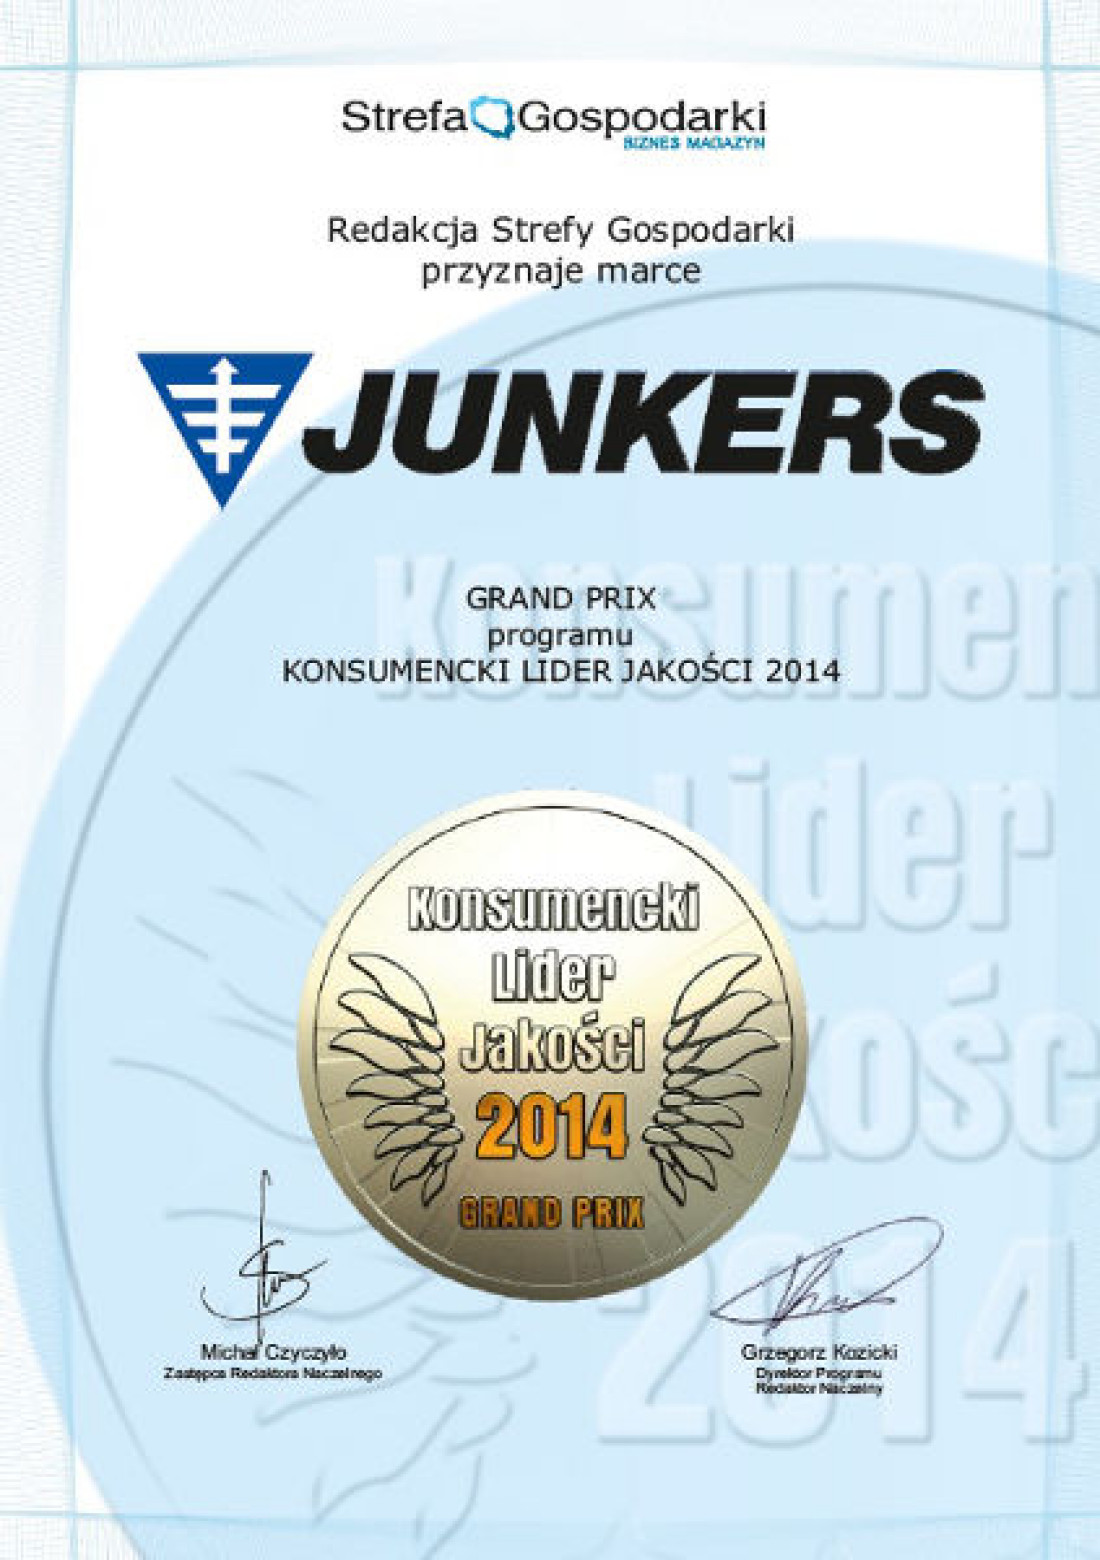 Marka Junkers otrzymała złote godło Konsumencki Lider Jakości 2014